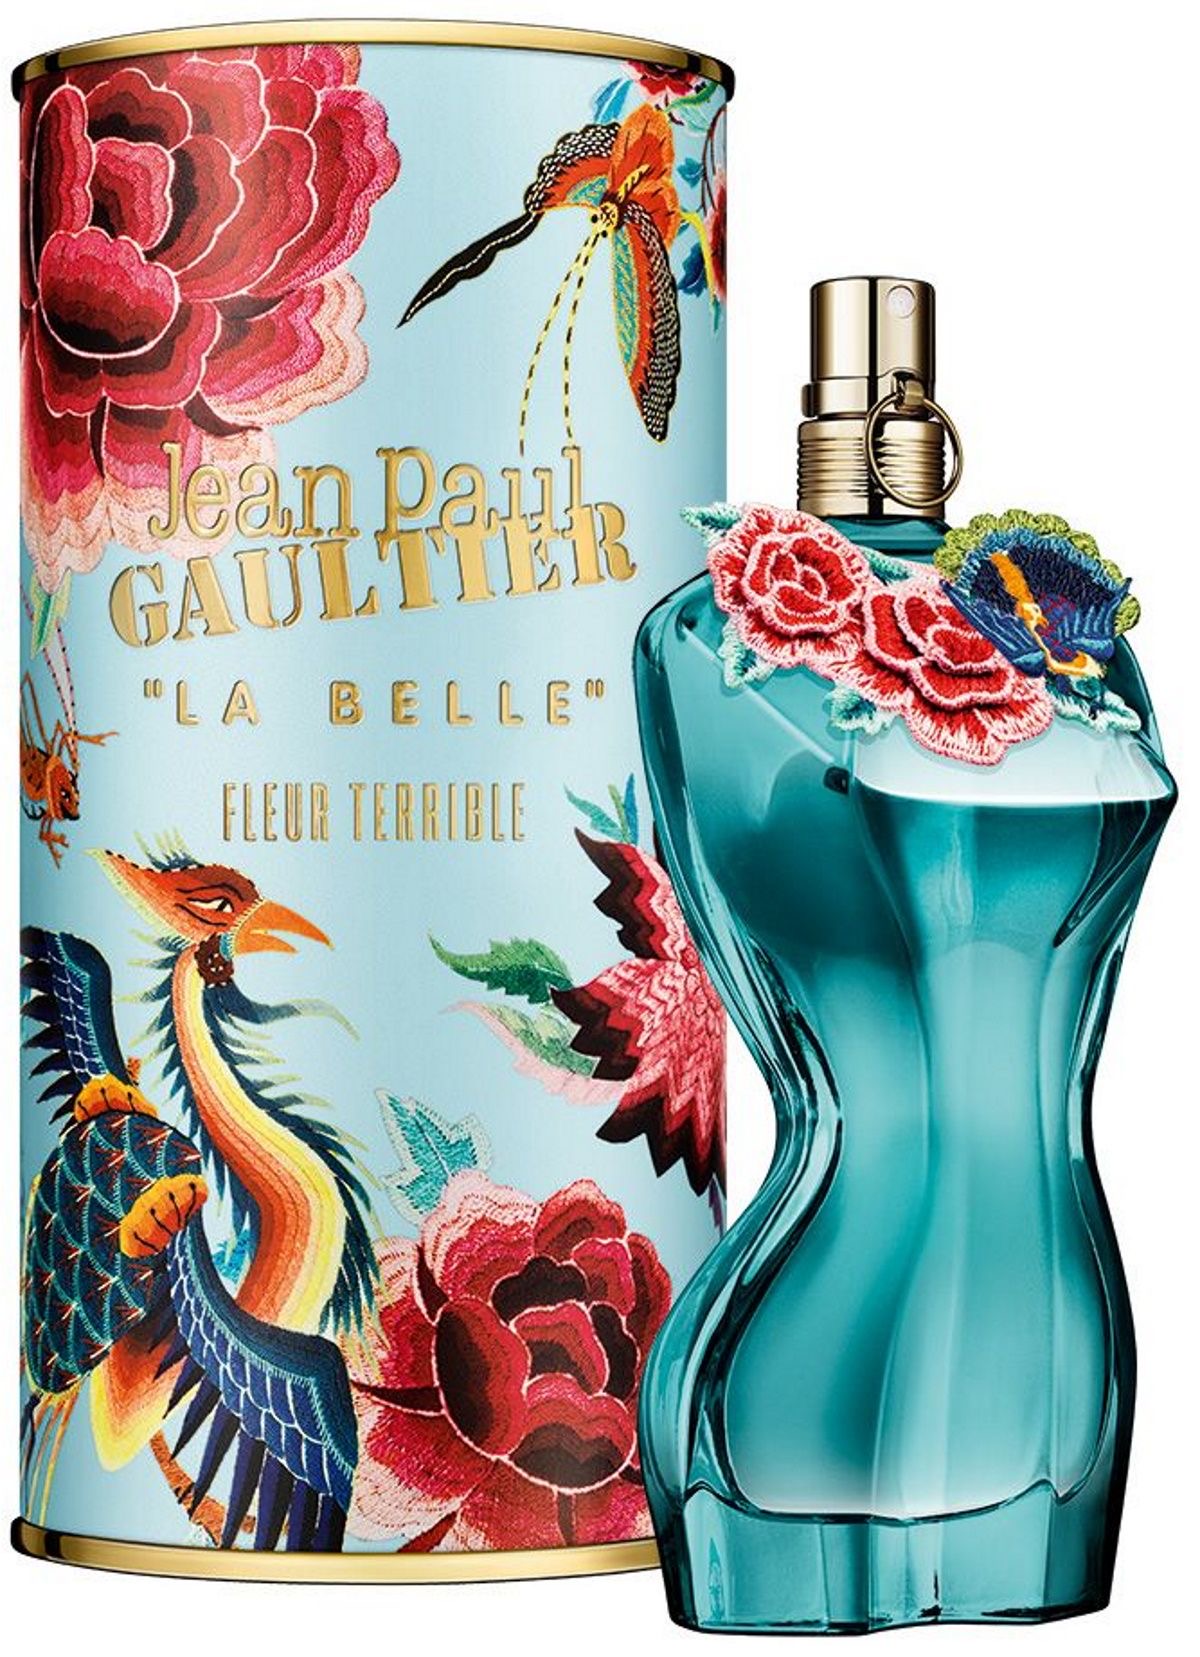 Buy Jean Paul Gaultier La Belle Fleur Terrible | Fragrance Planet